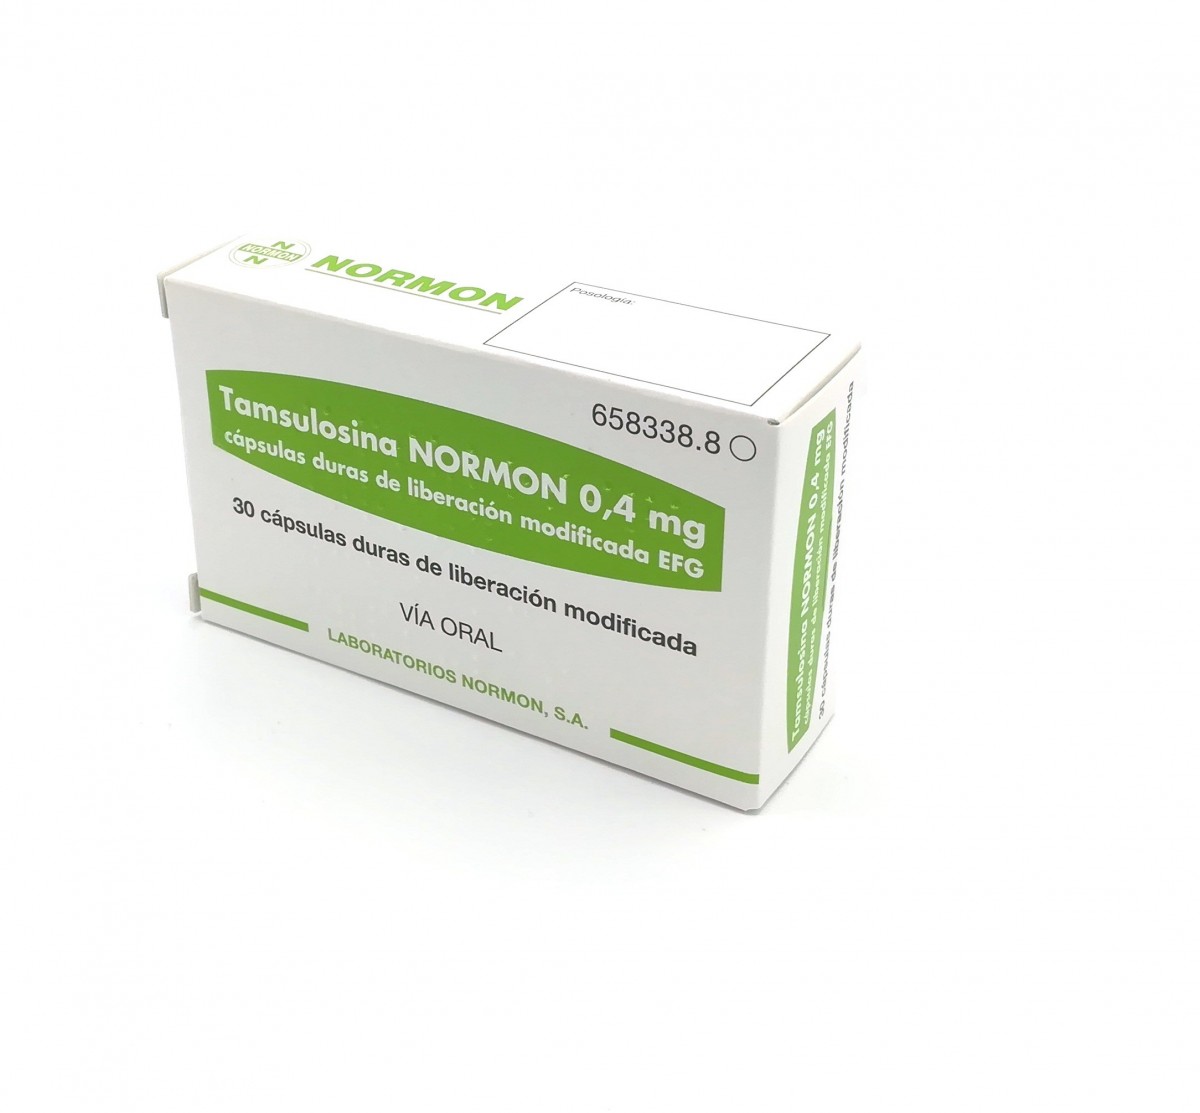 TAMSULOSINA NORMON 0,4 mg CAPSULAS DURAS DE LIBERACION MODIFICADA EFG , 30 cápsulas fotografía del envase.